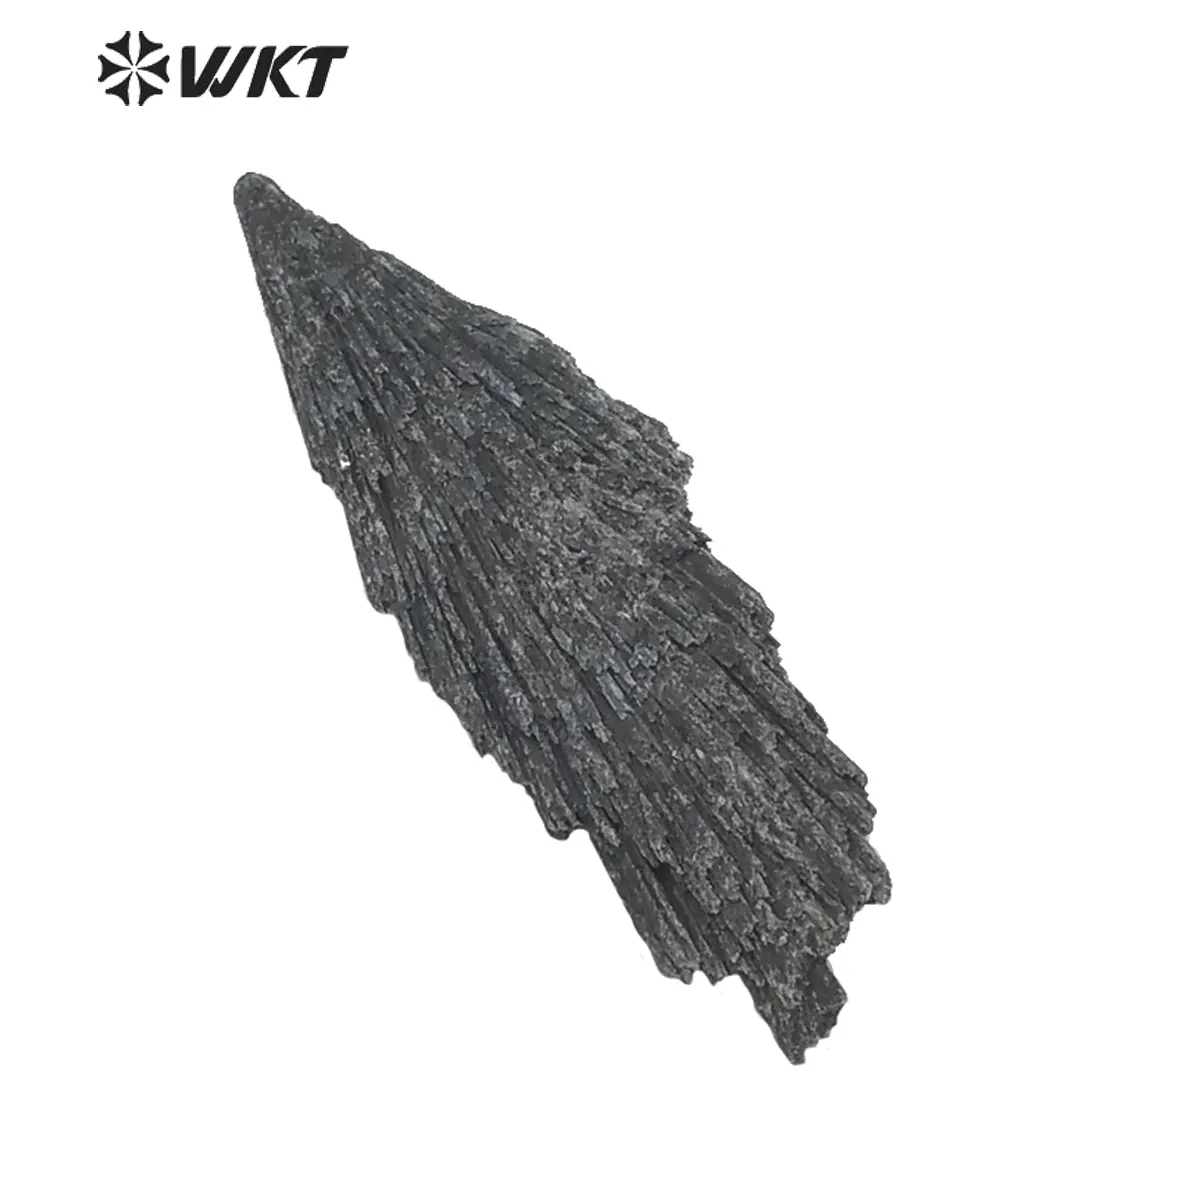 WT-G152 Wholesale Black Kyanite Crystal, Gemstone Mineral Natural Reiki Healing black Kyanite stone